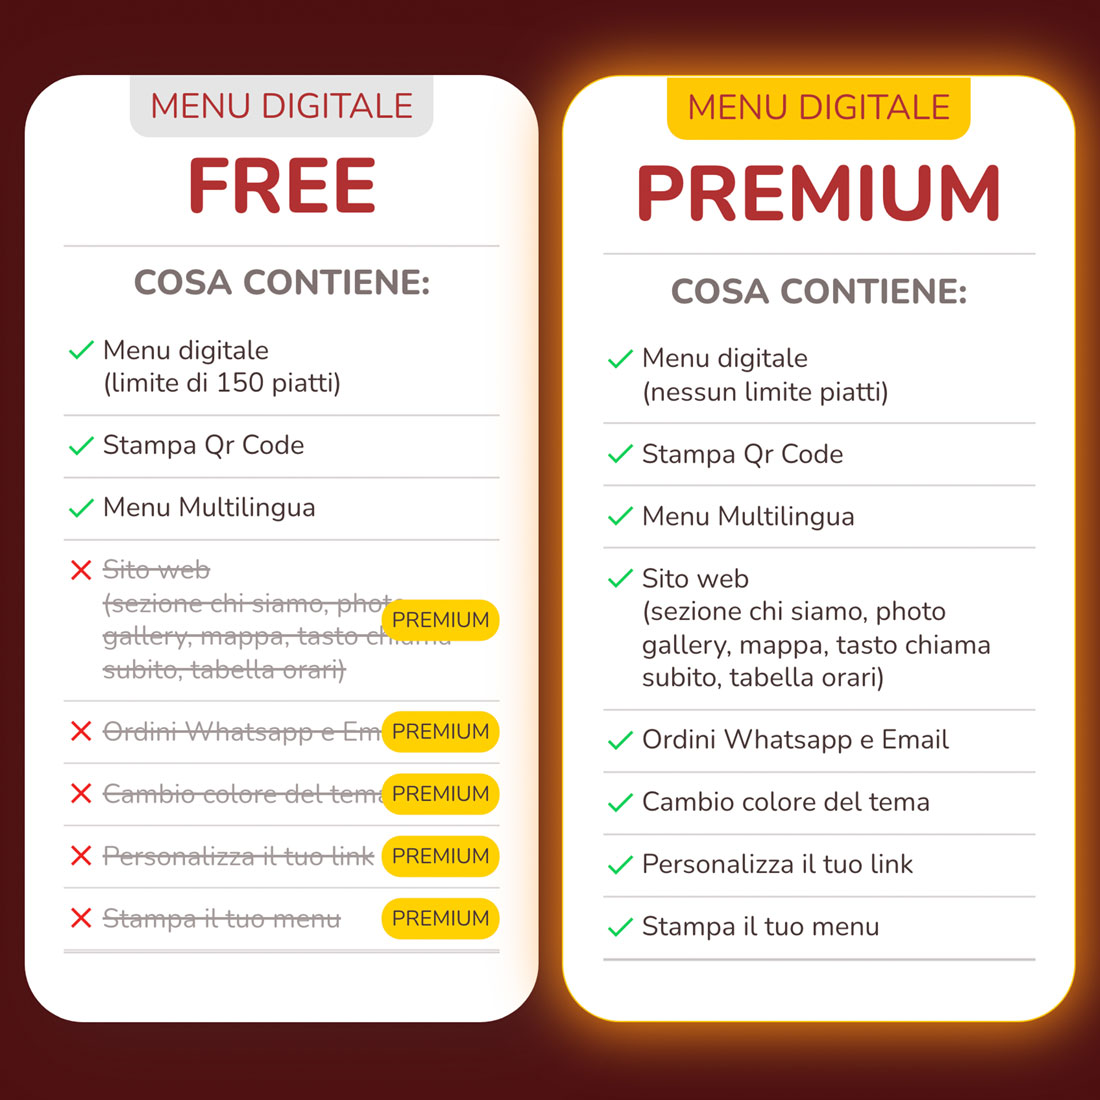 comparazione funzioni a pagamento del menu digitale vs menu gratuito